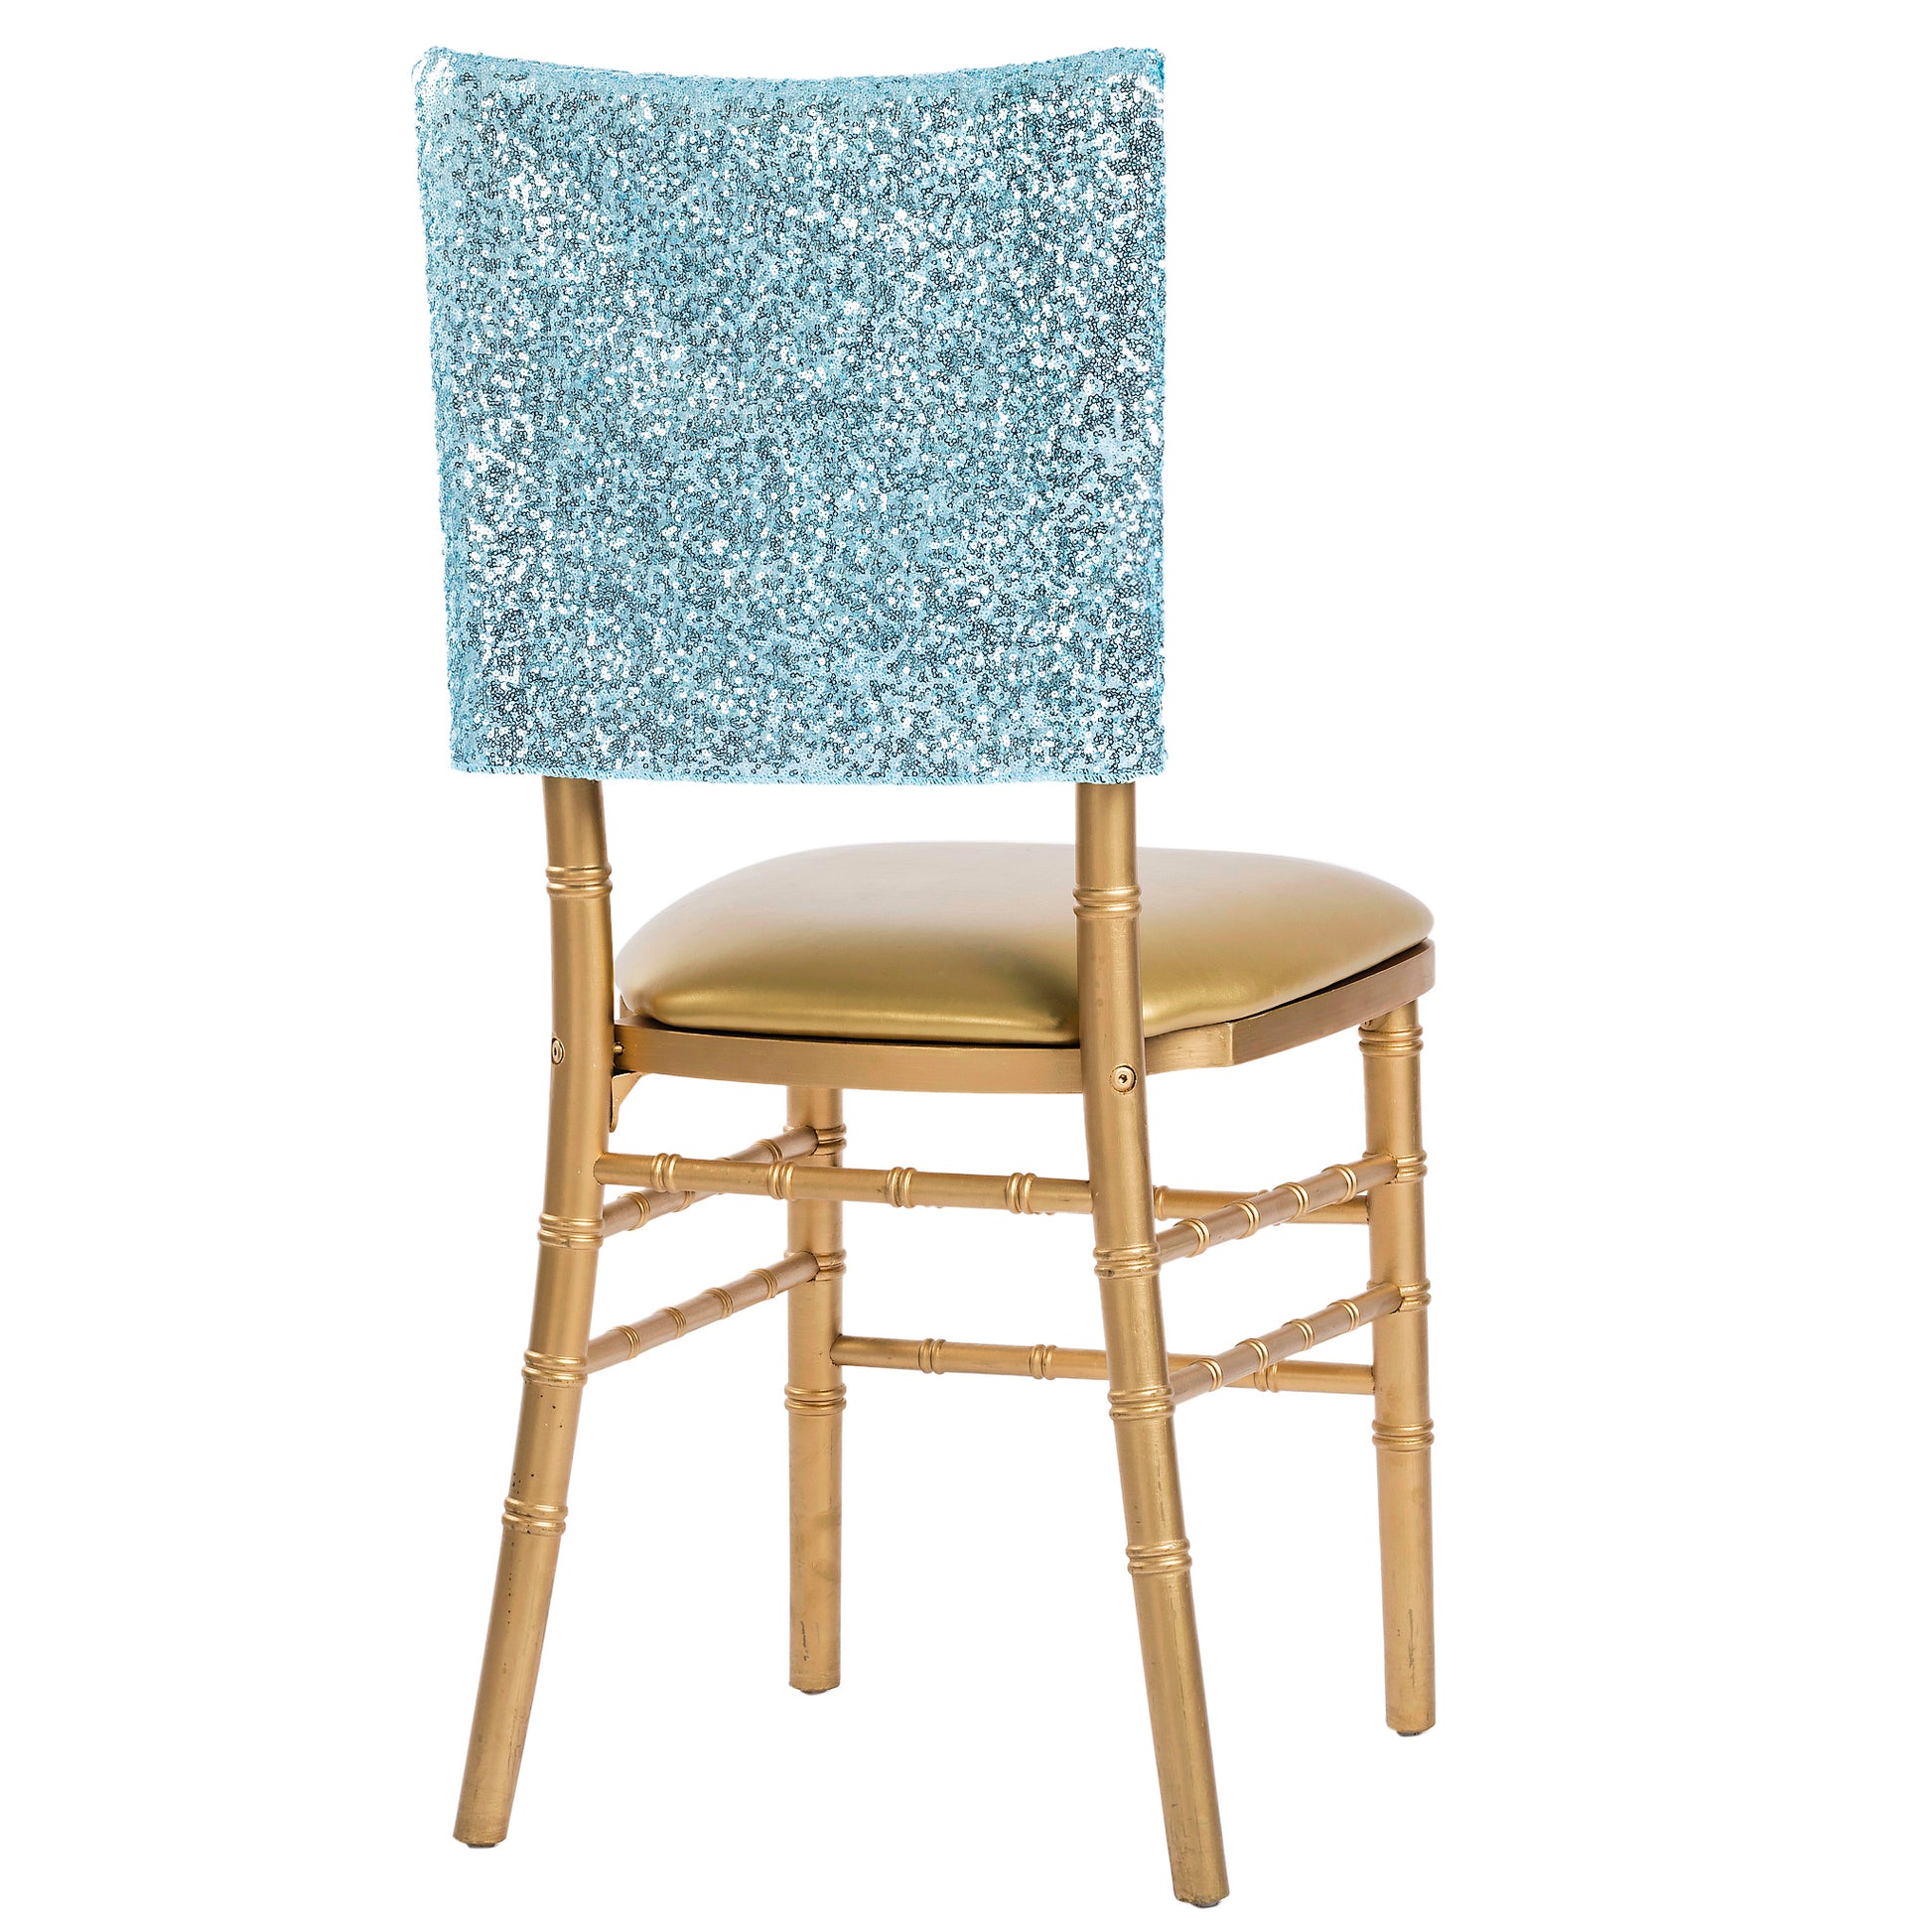 Glitz Sequin Chiavari Chair Cap 16"W x 14"L - Baby Blue - CV Linens